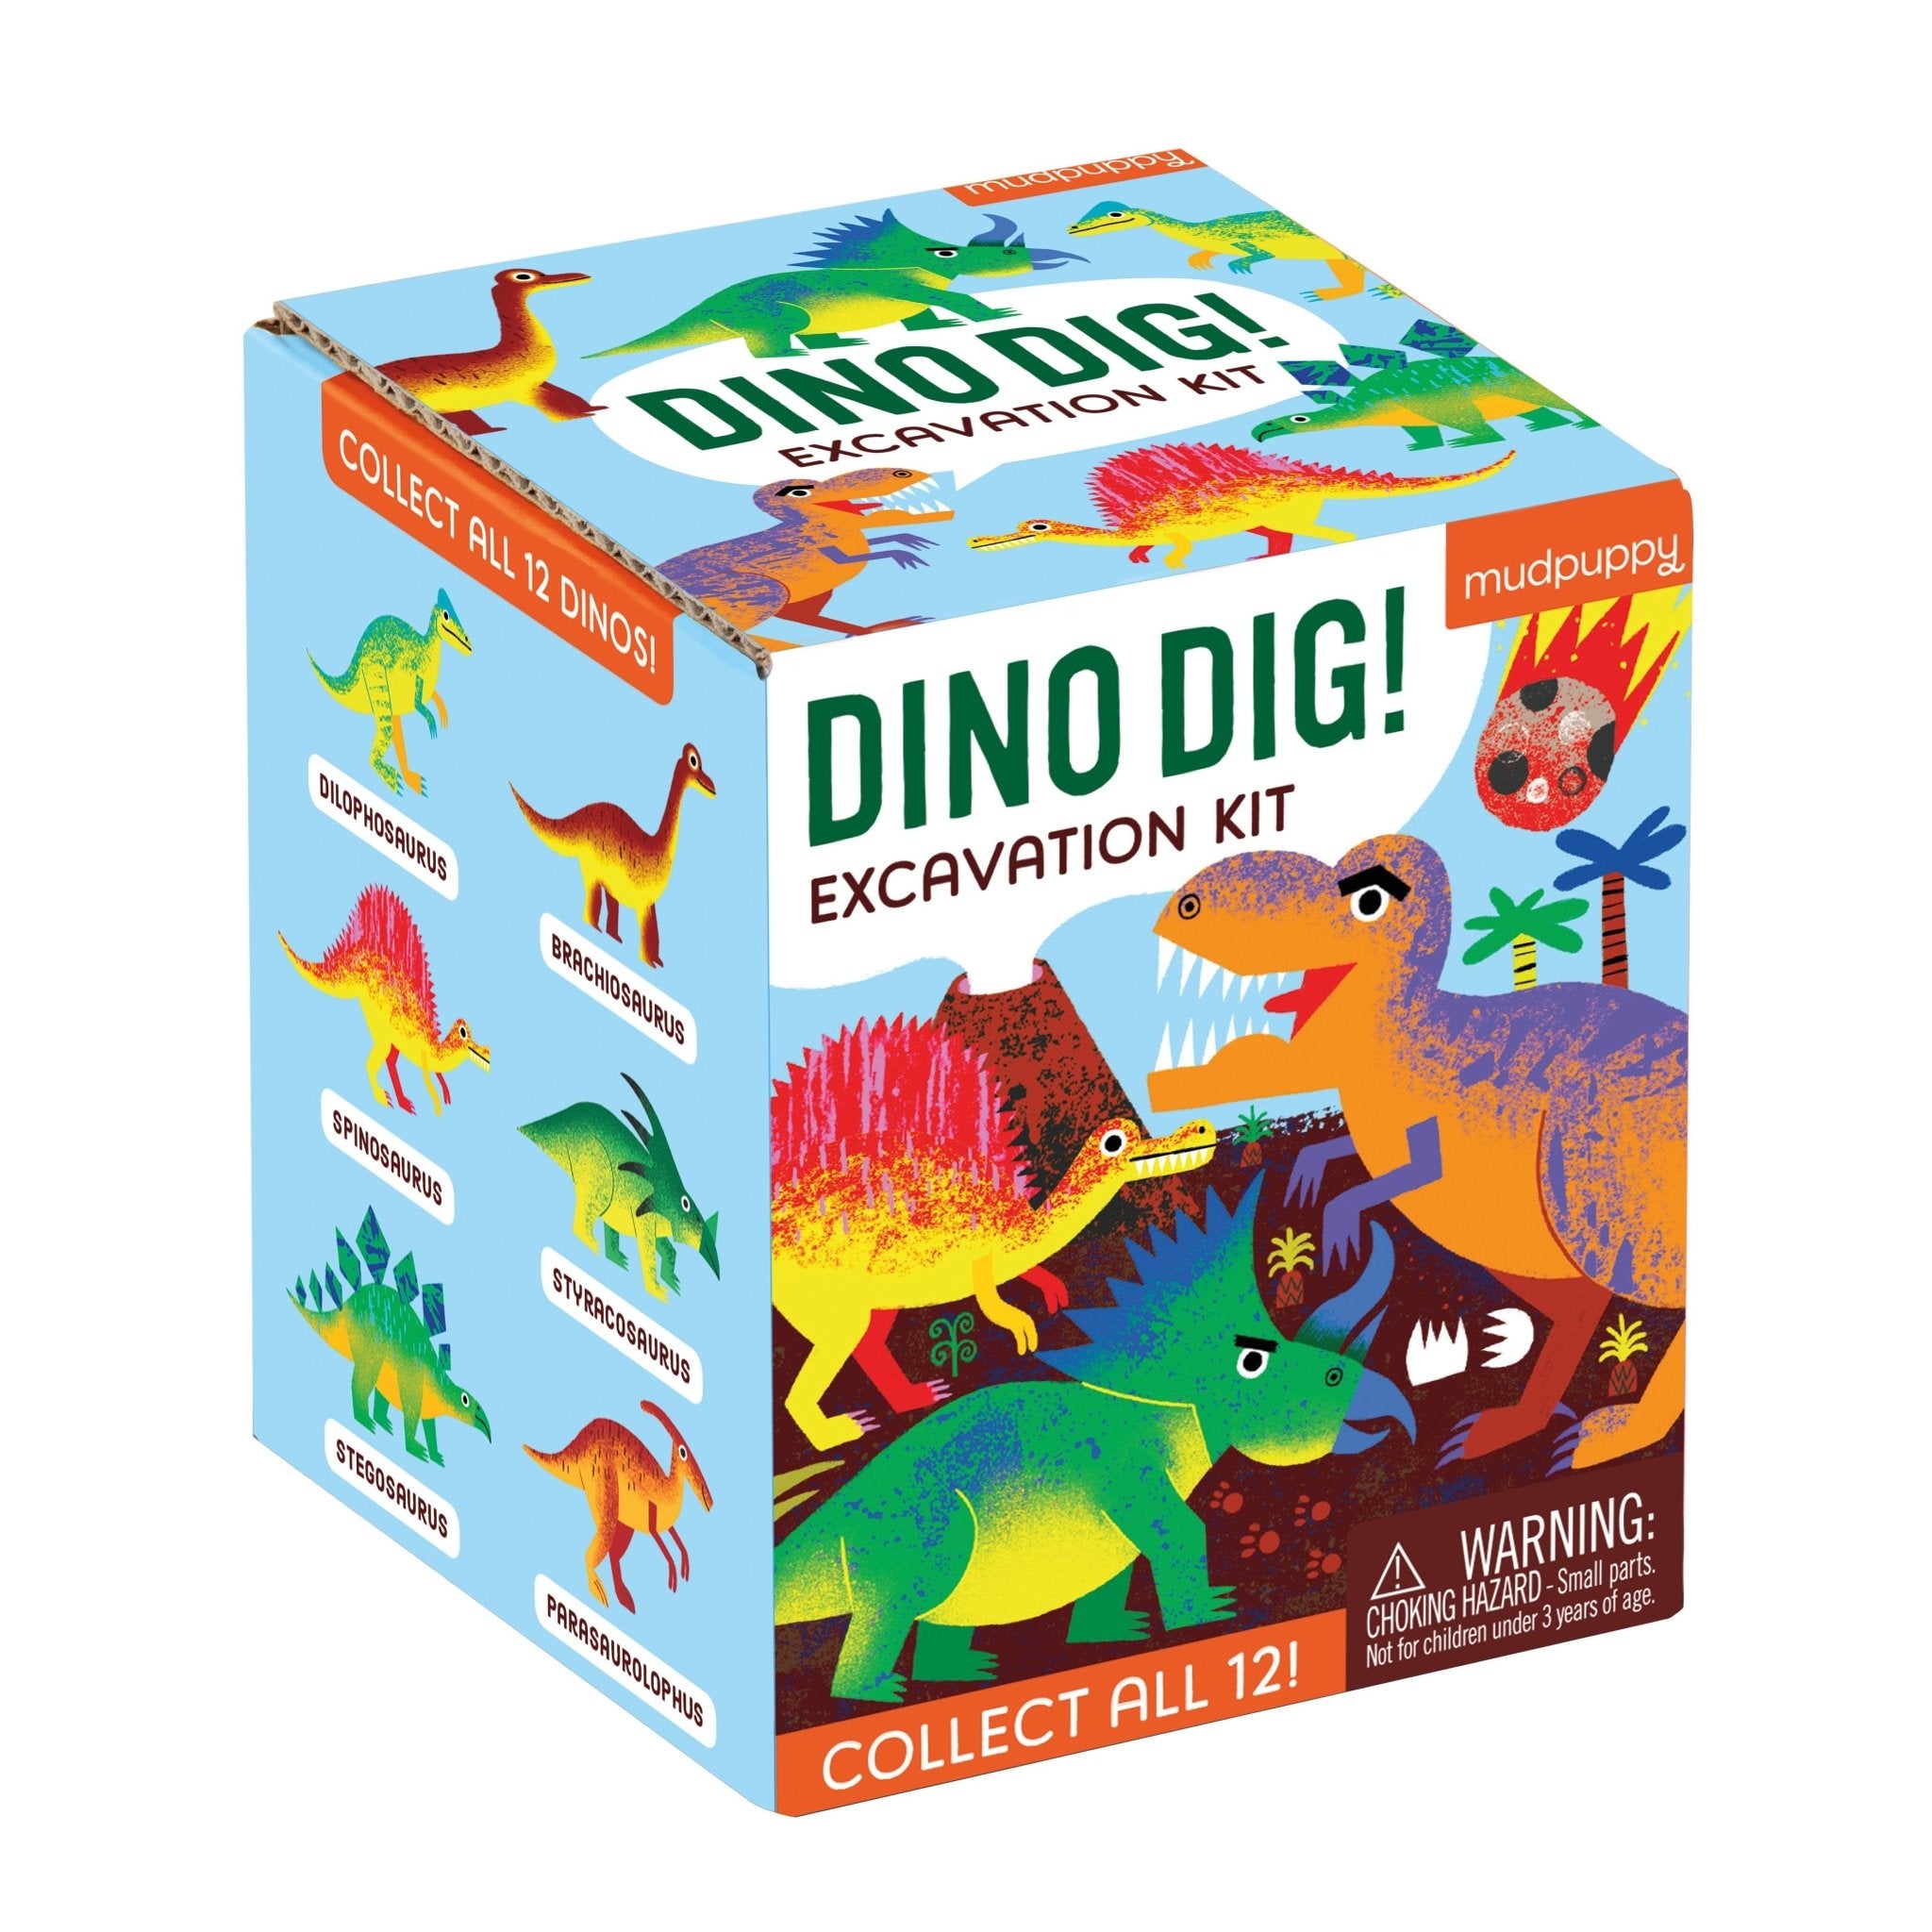 I Dig Dinos